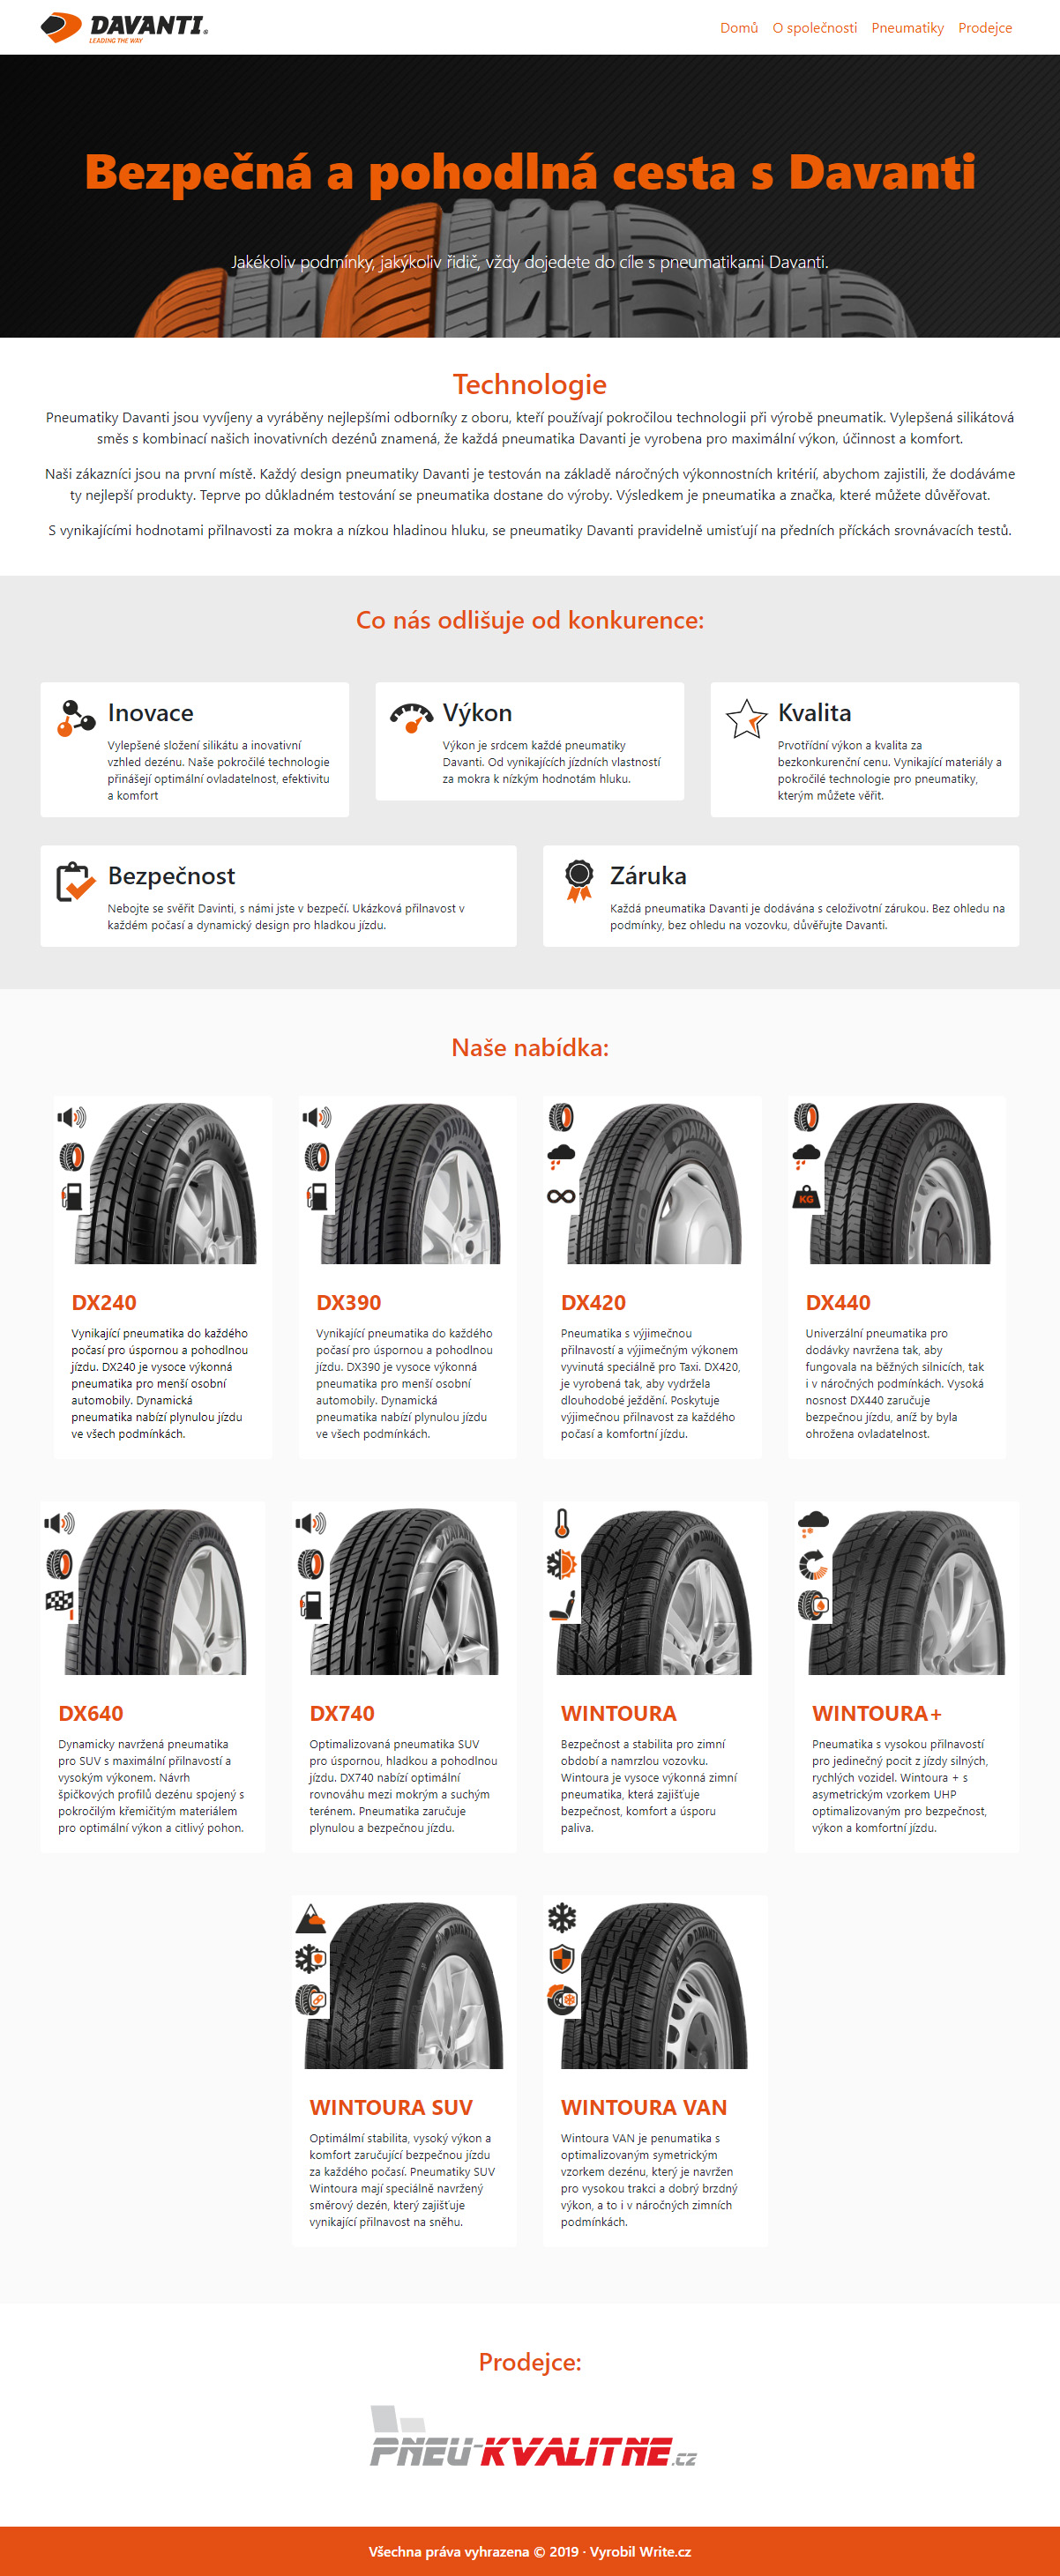   Maximální výkon a komfort. To jsou hlavní znaky pneumatik Davanti.cz i jejich webové prezentace.  